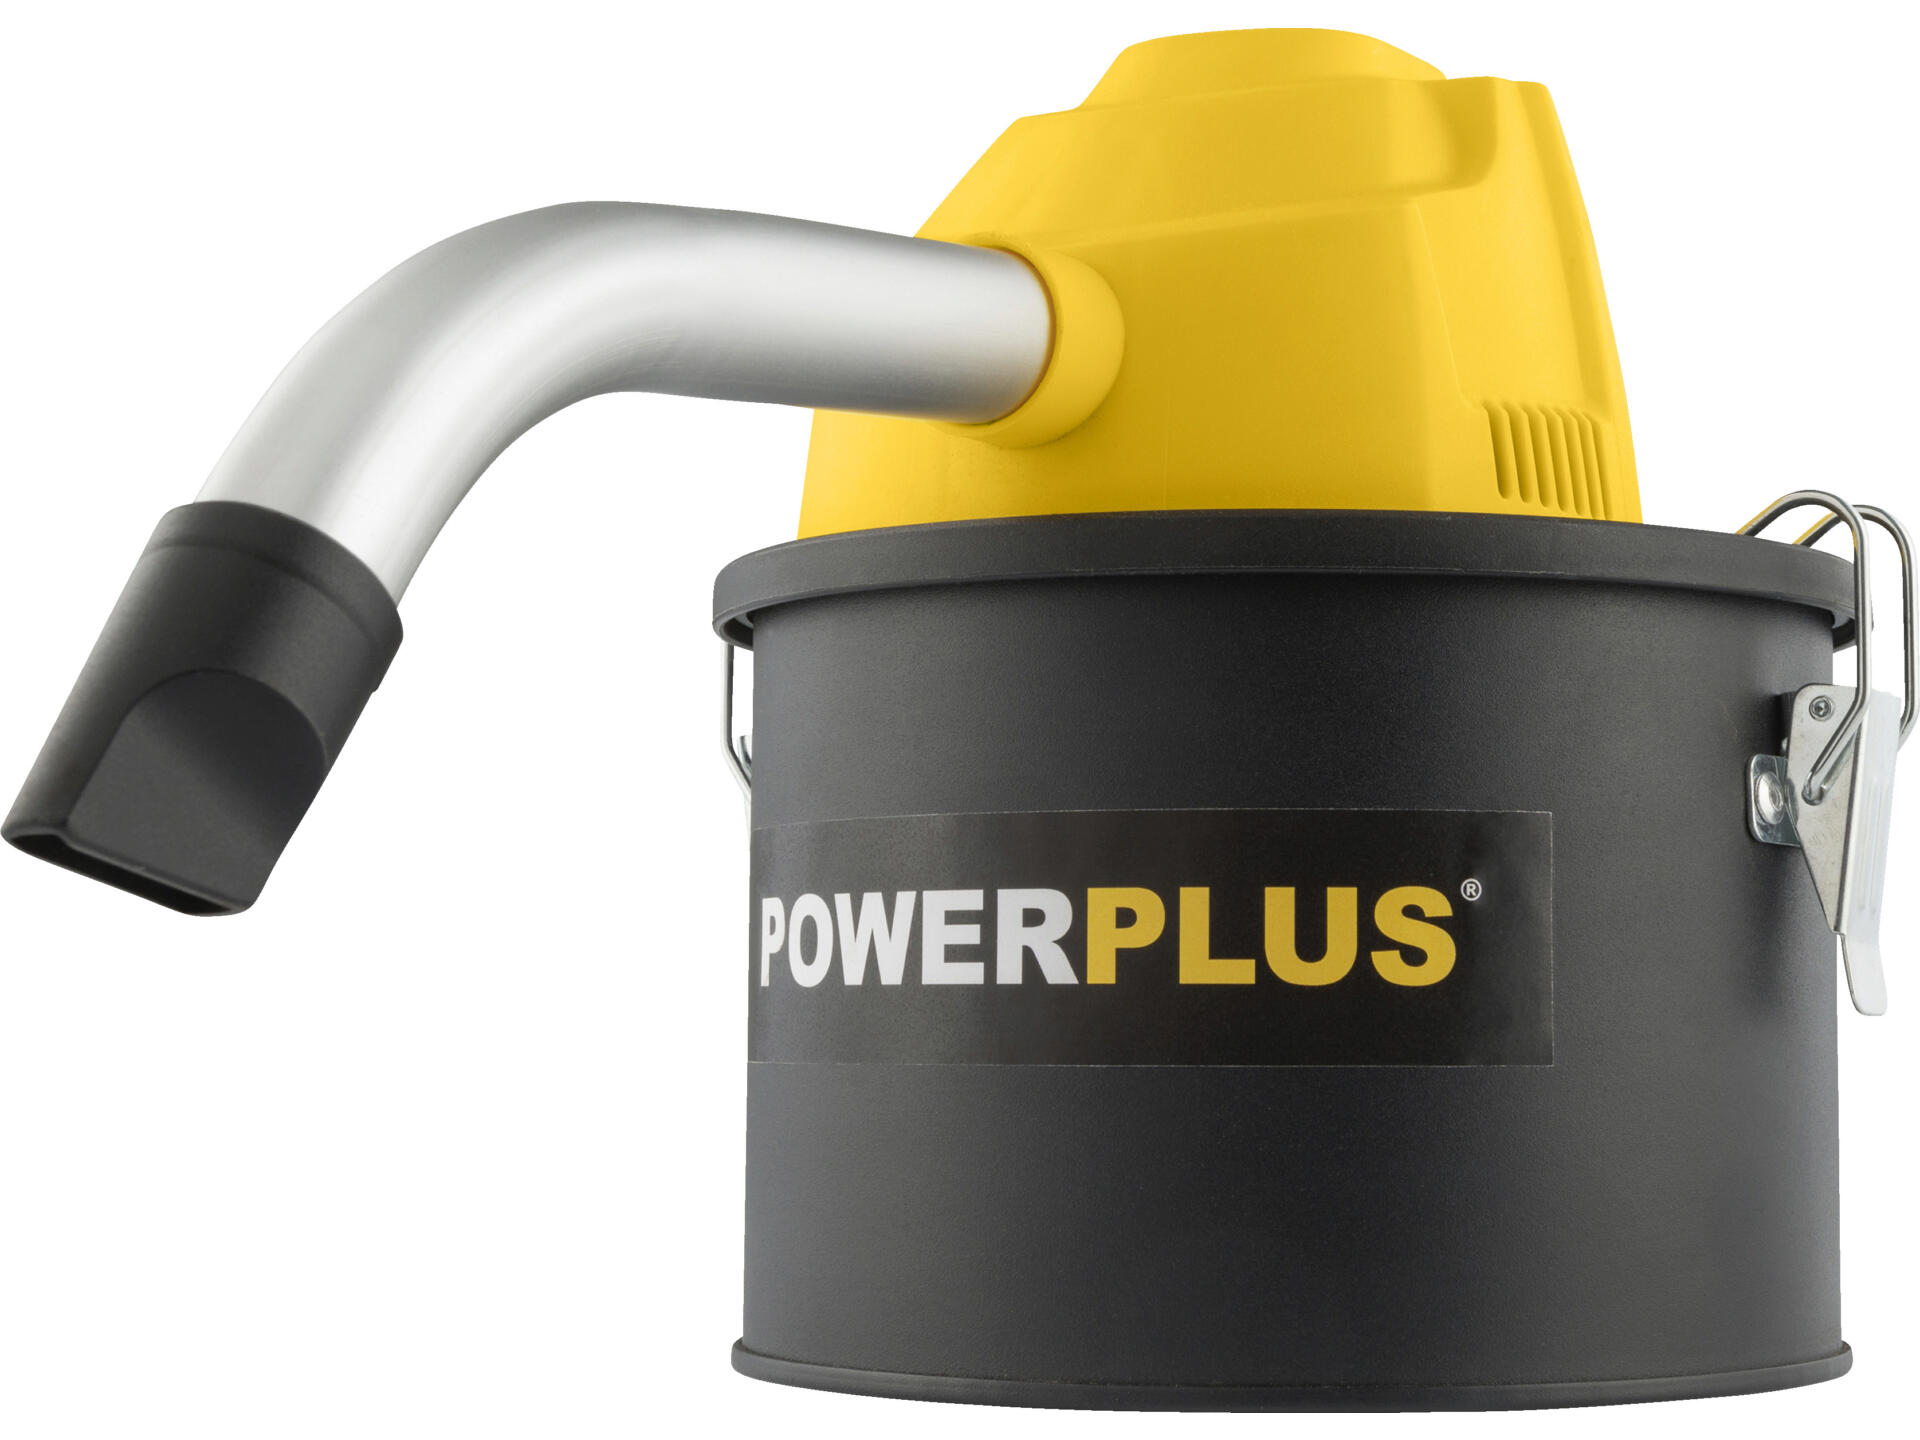 Powerplus POWX3004 aspirateur vide-cendres 600W 4l